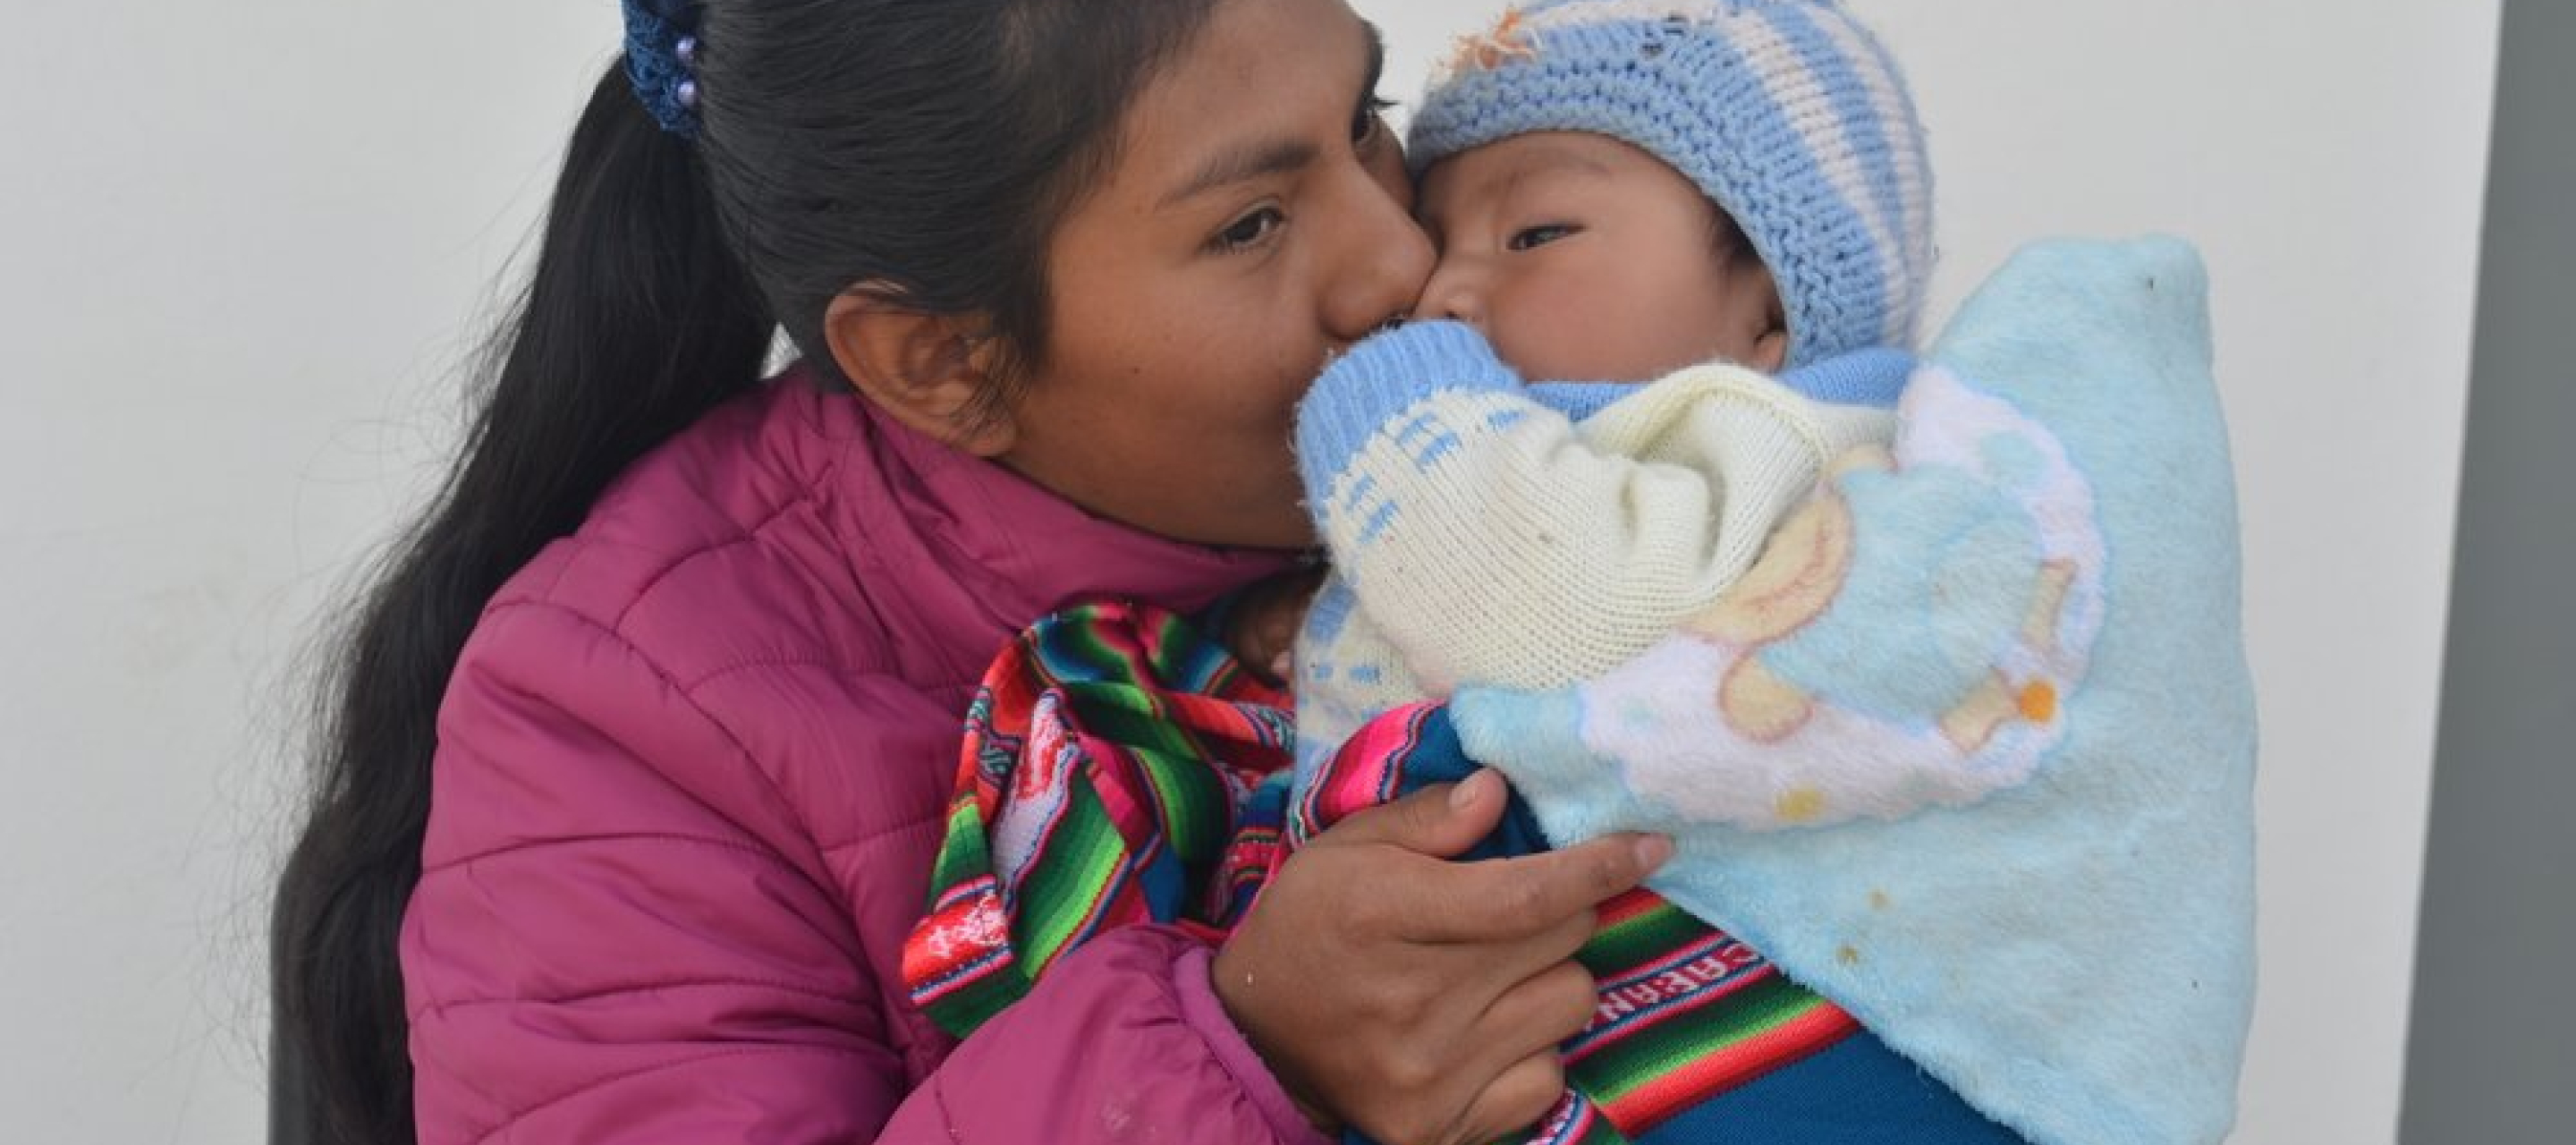 Die Gesundheitsförderin Maribel Camargo Paco küsst ihren 6 Monate alten Sohn